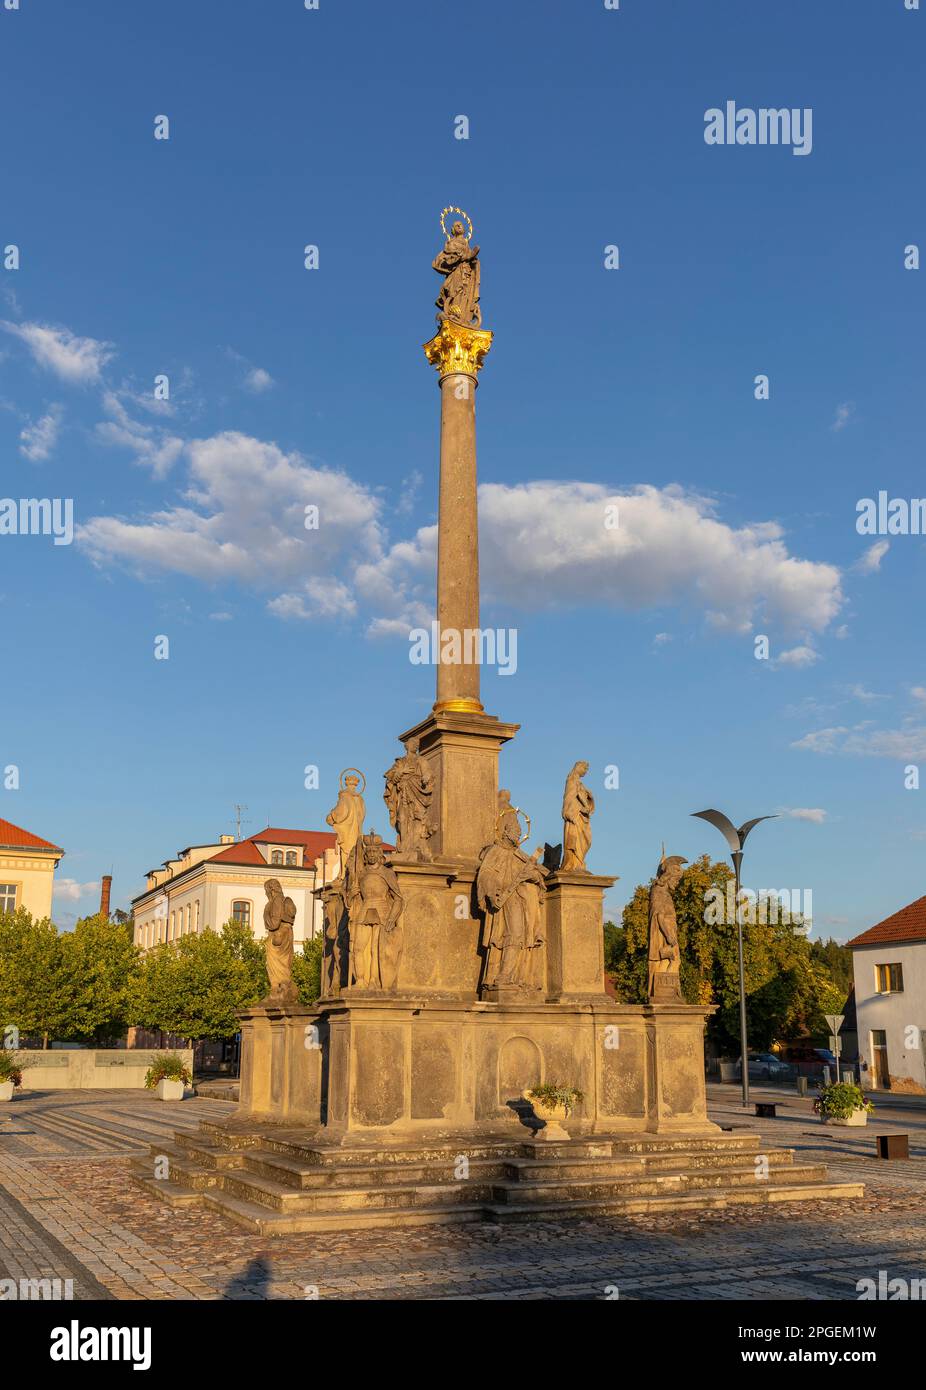 STRIBRO, RÉPUBLIQUE TCHÈQUE, EUROPE - colonne Marian, place Masarykovo dans le centre-ville de Stribro. La base dispose de 13 sculptures de saints (patrons de la peste). Banque D'Images